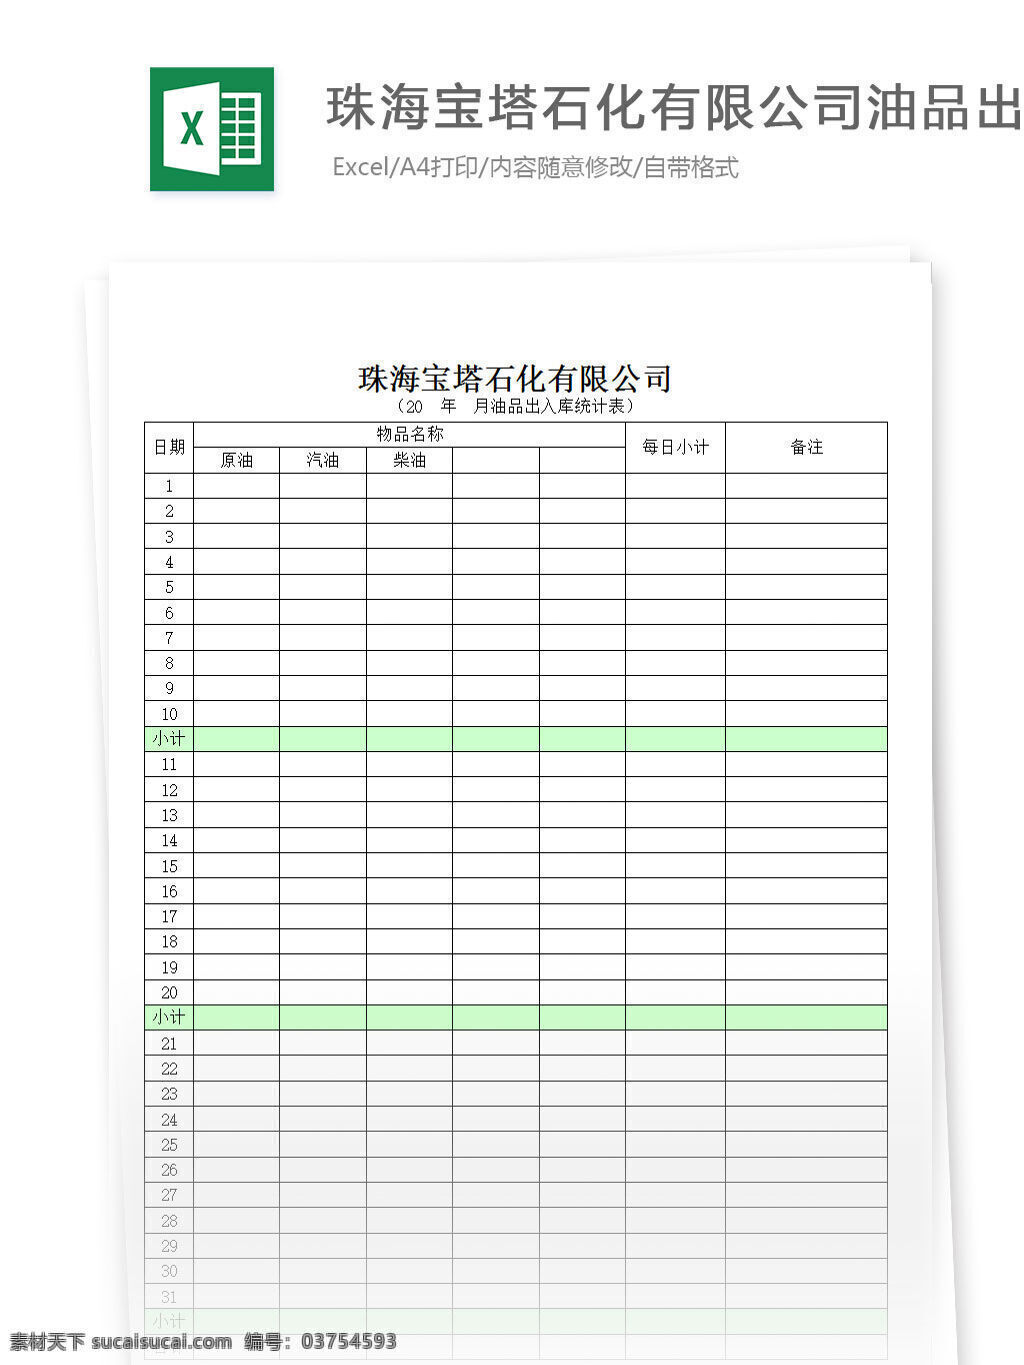 出入库 油品 统计表 表格 表格模板 表格设计 图表 统计